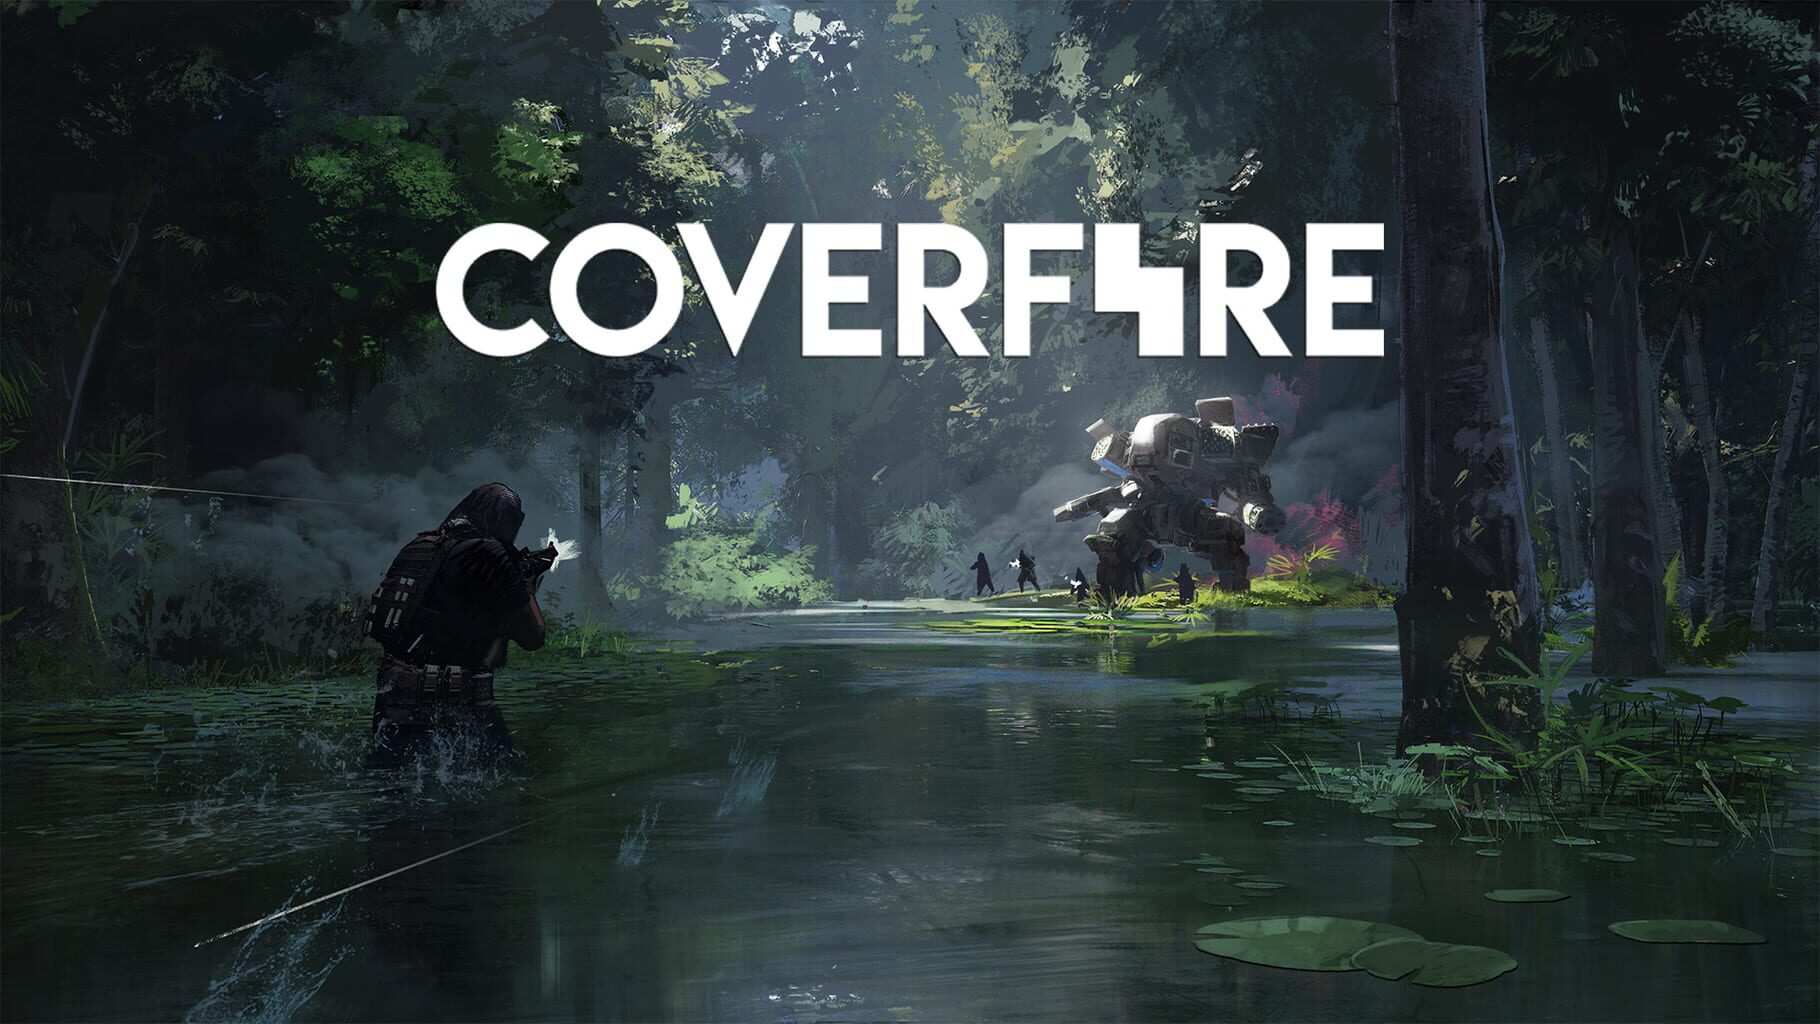 Cover Fire artwork